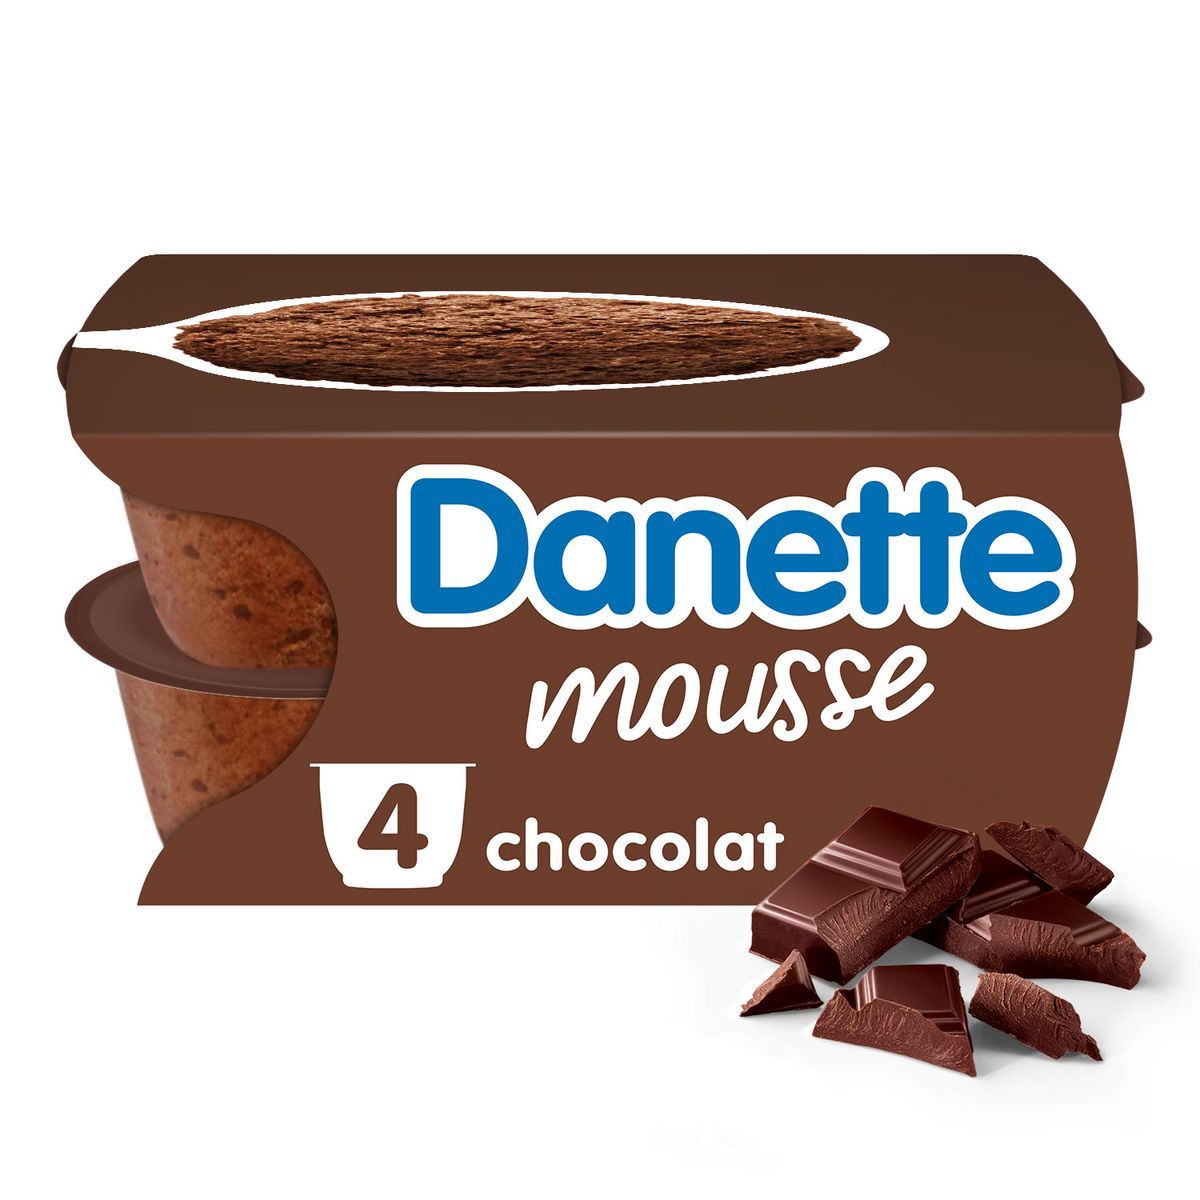 DANETTE MOUSSE